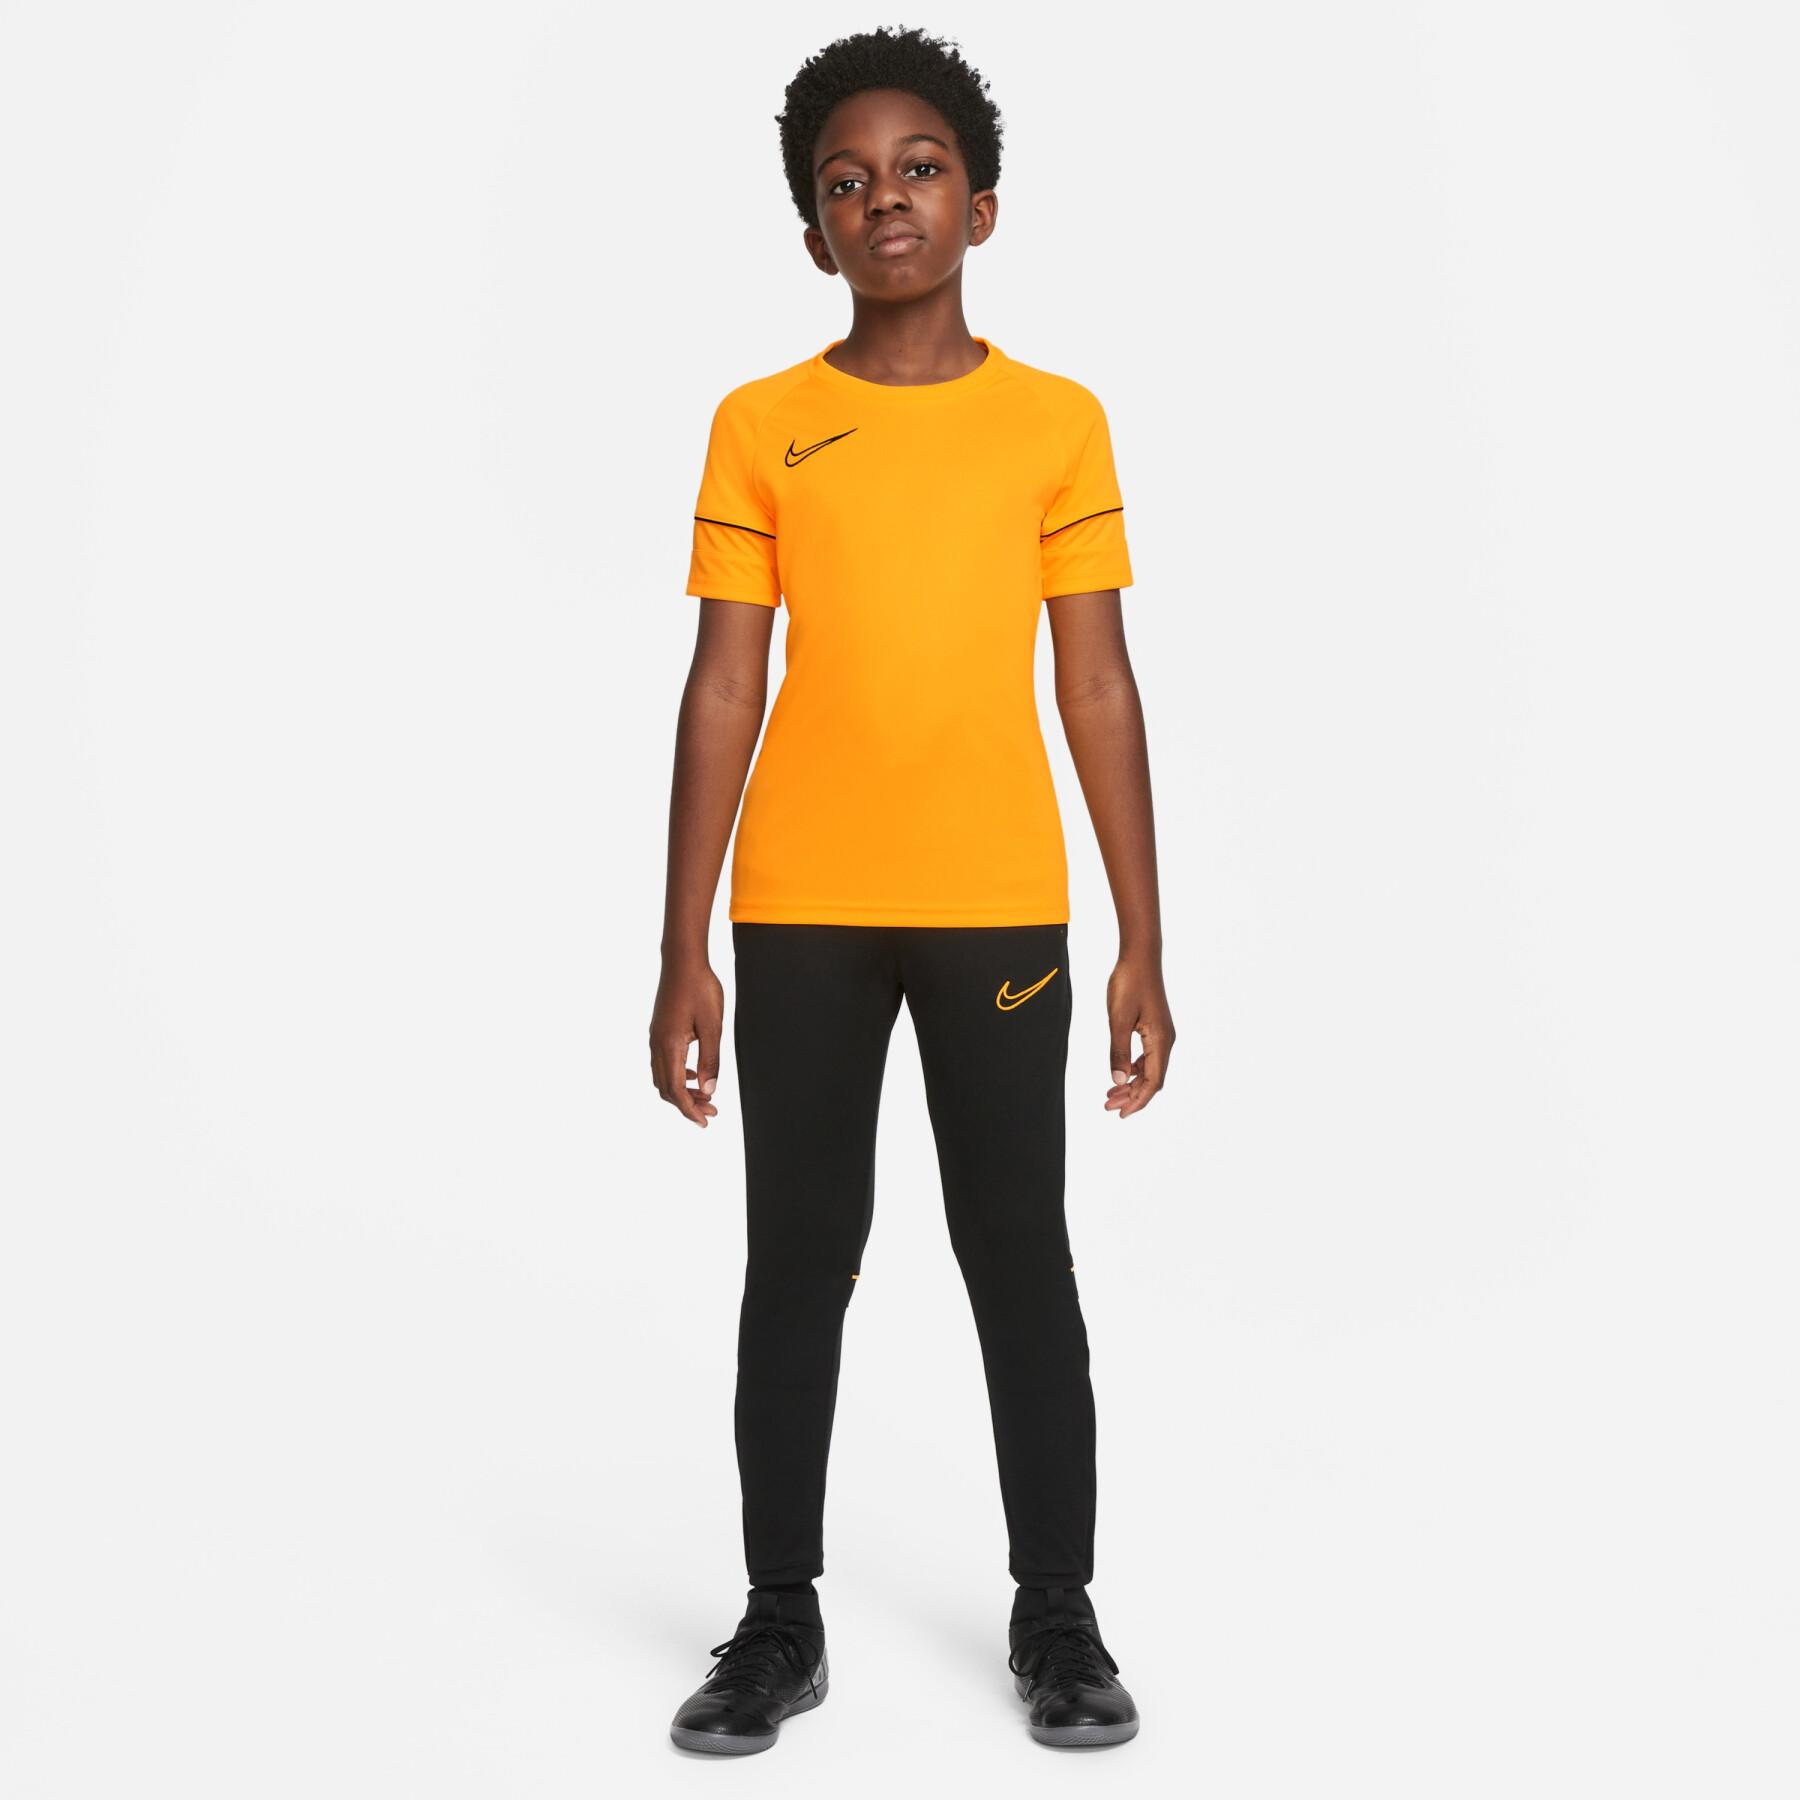 Children's jogging suit Nike Dri-FIT Academy